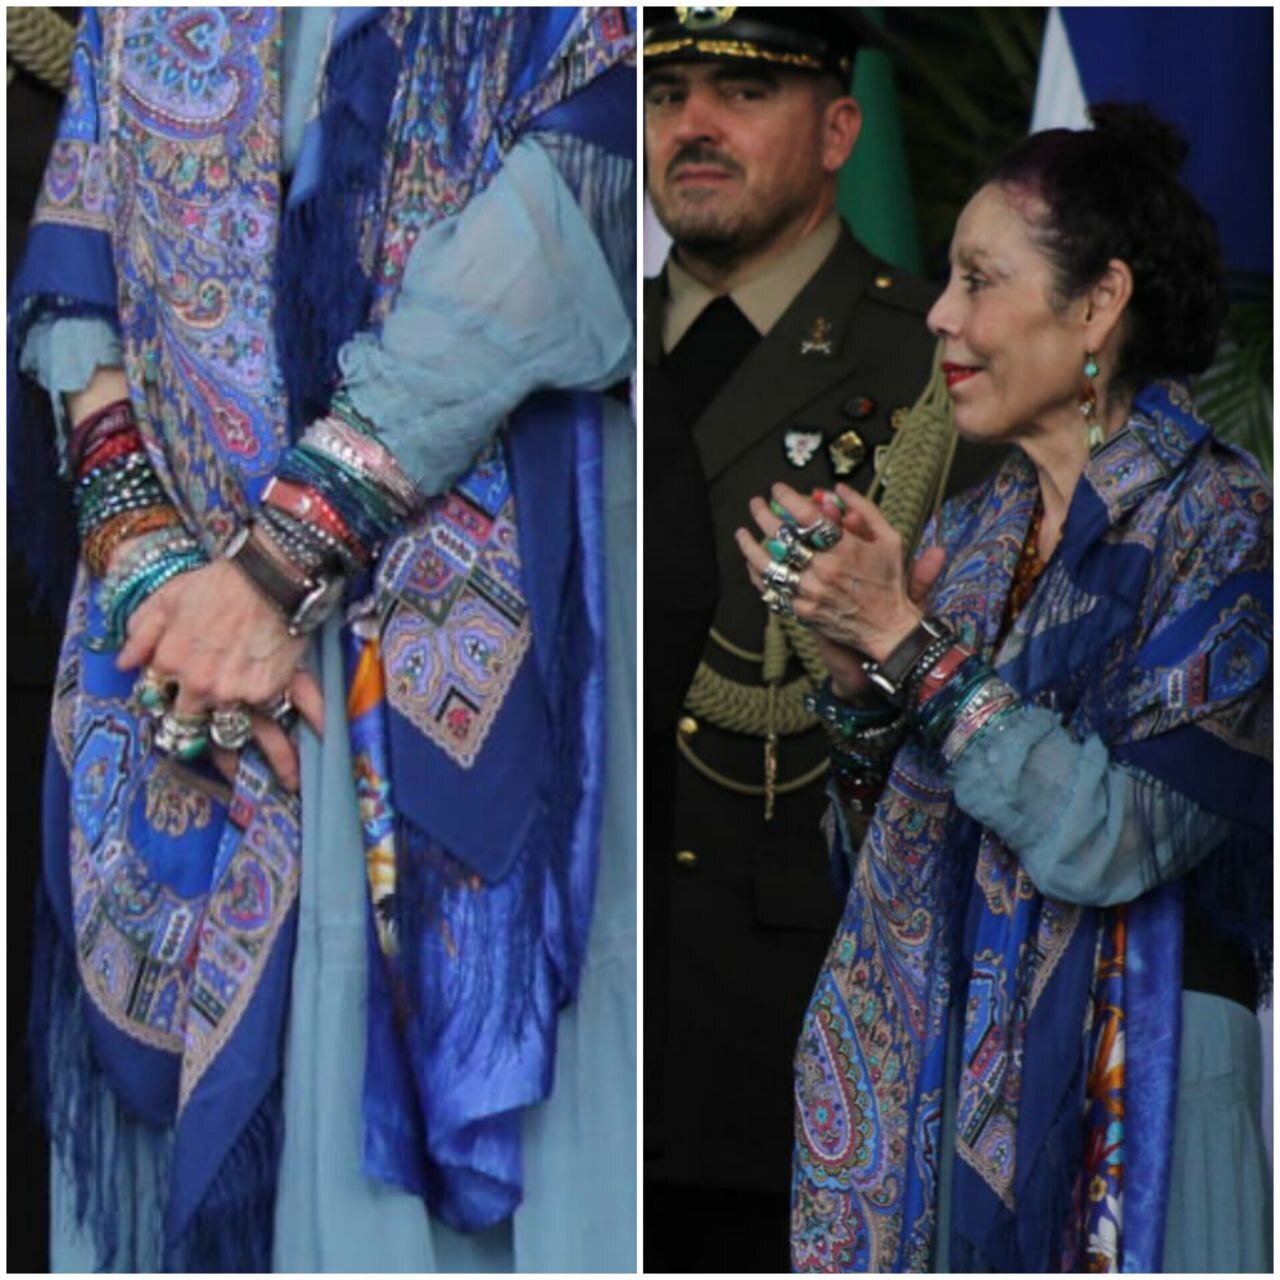  زیورآلات همسر اورتگا در مراسم استقبال از رئیس جمهور+عکس